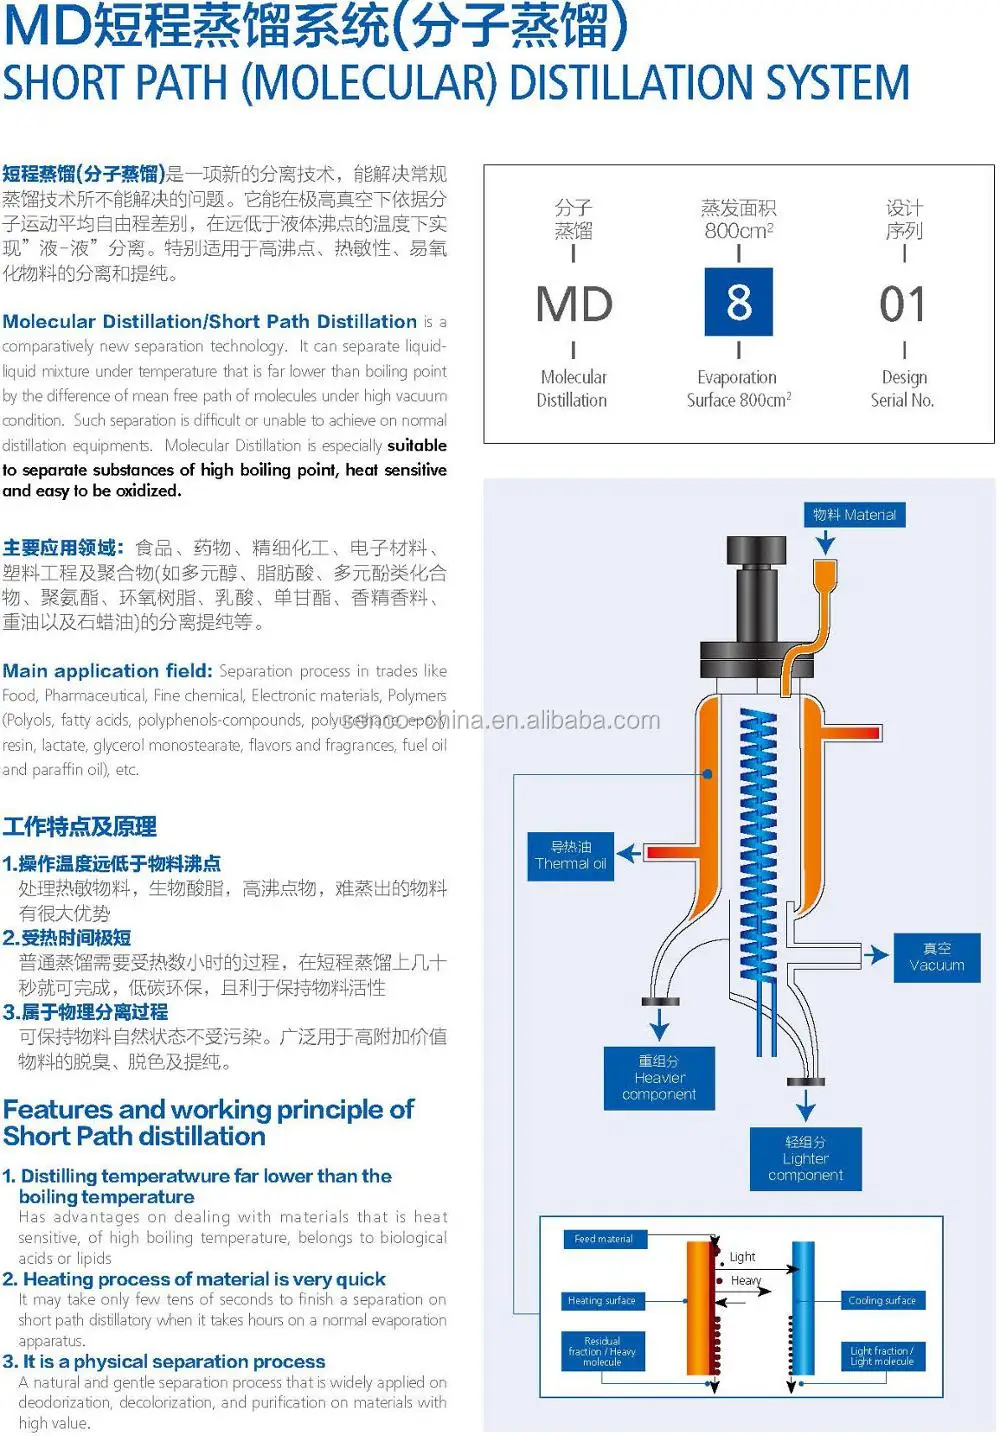 md801 short path molecular distillation system